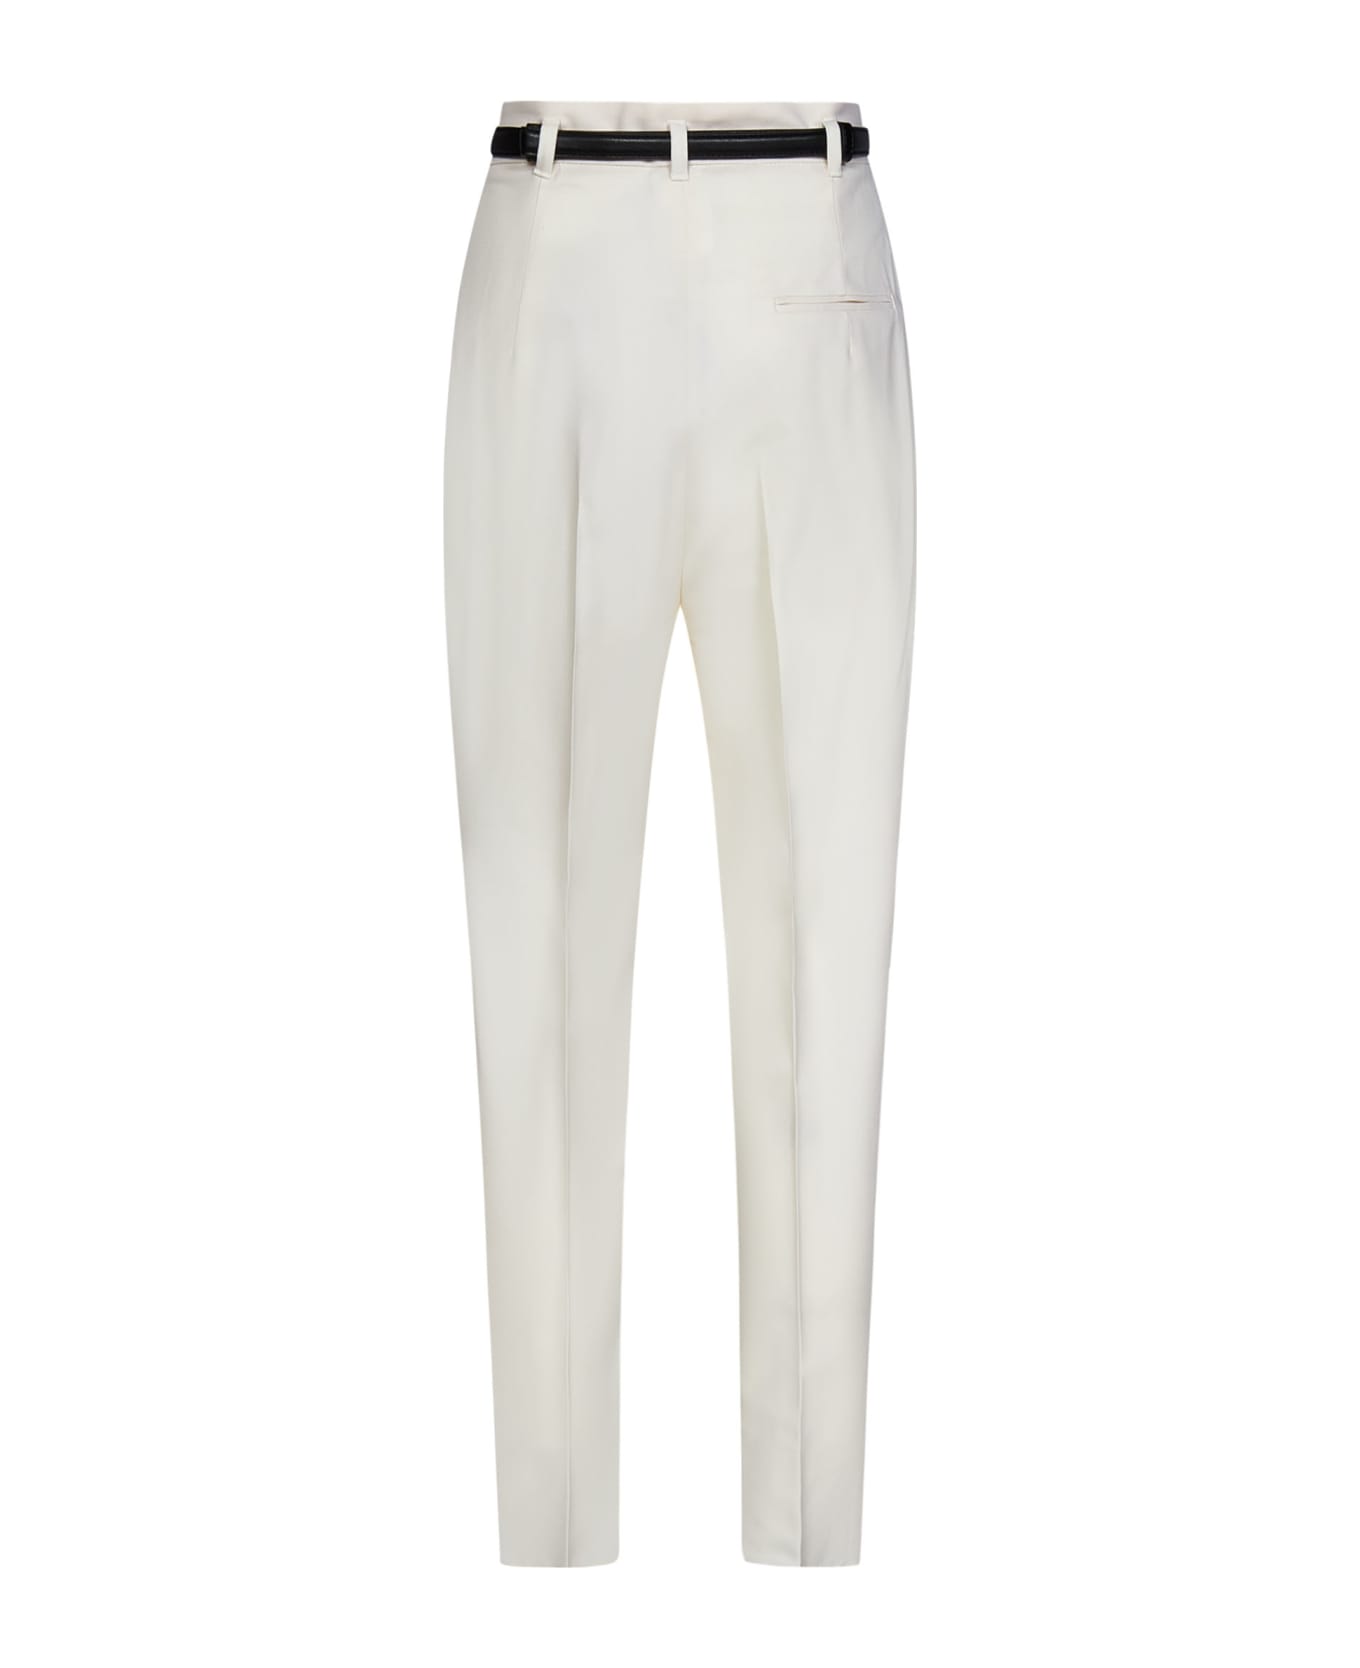 Max Mara Studio Briose Trousers - White